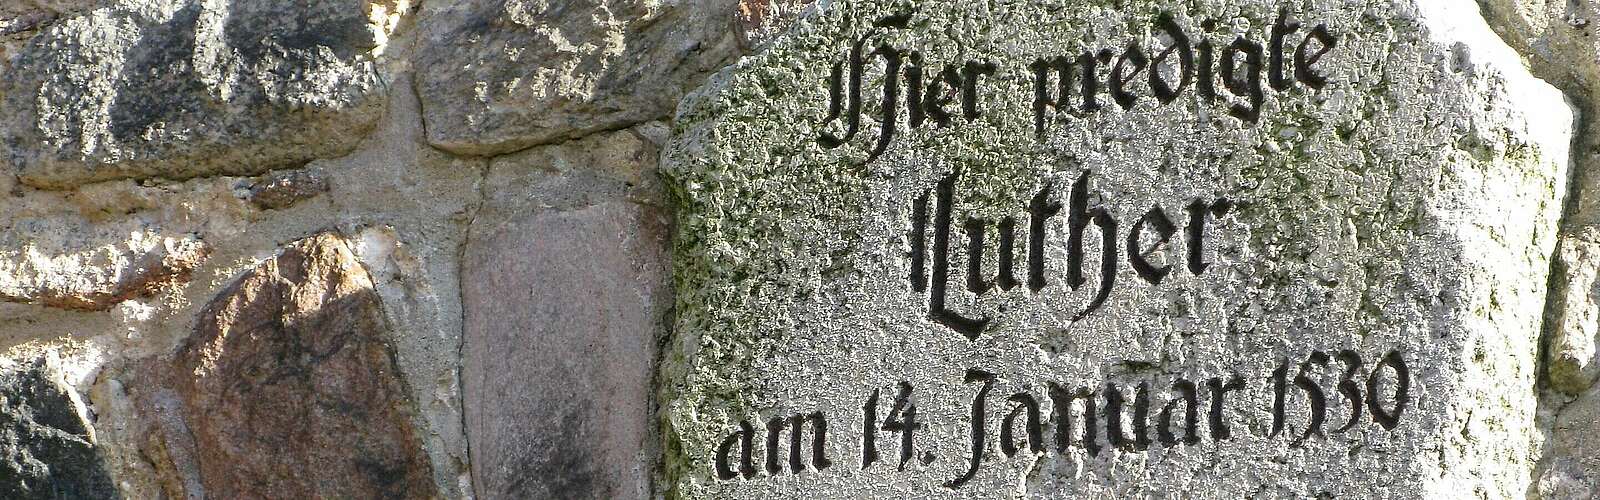 Lutherstein in Bad Belzig,
        
    

        Foto: Fotograf / Lizenz - Media Import/Lars Franke